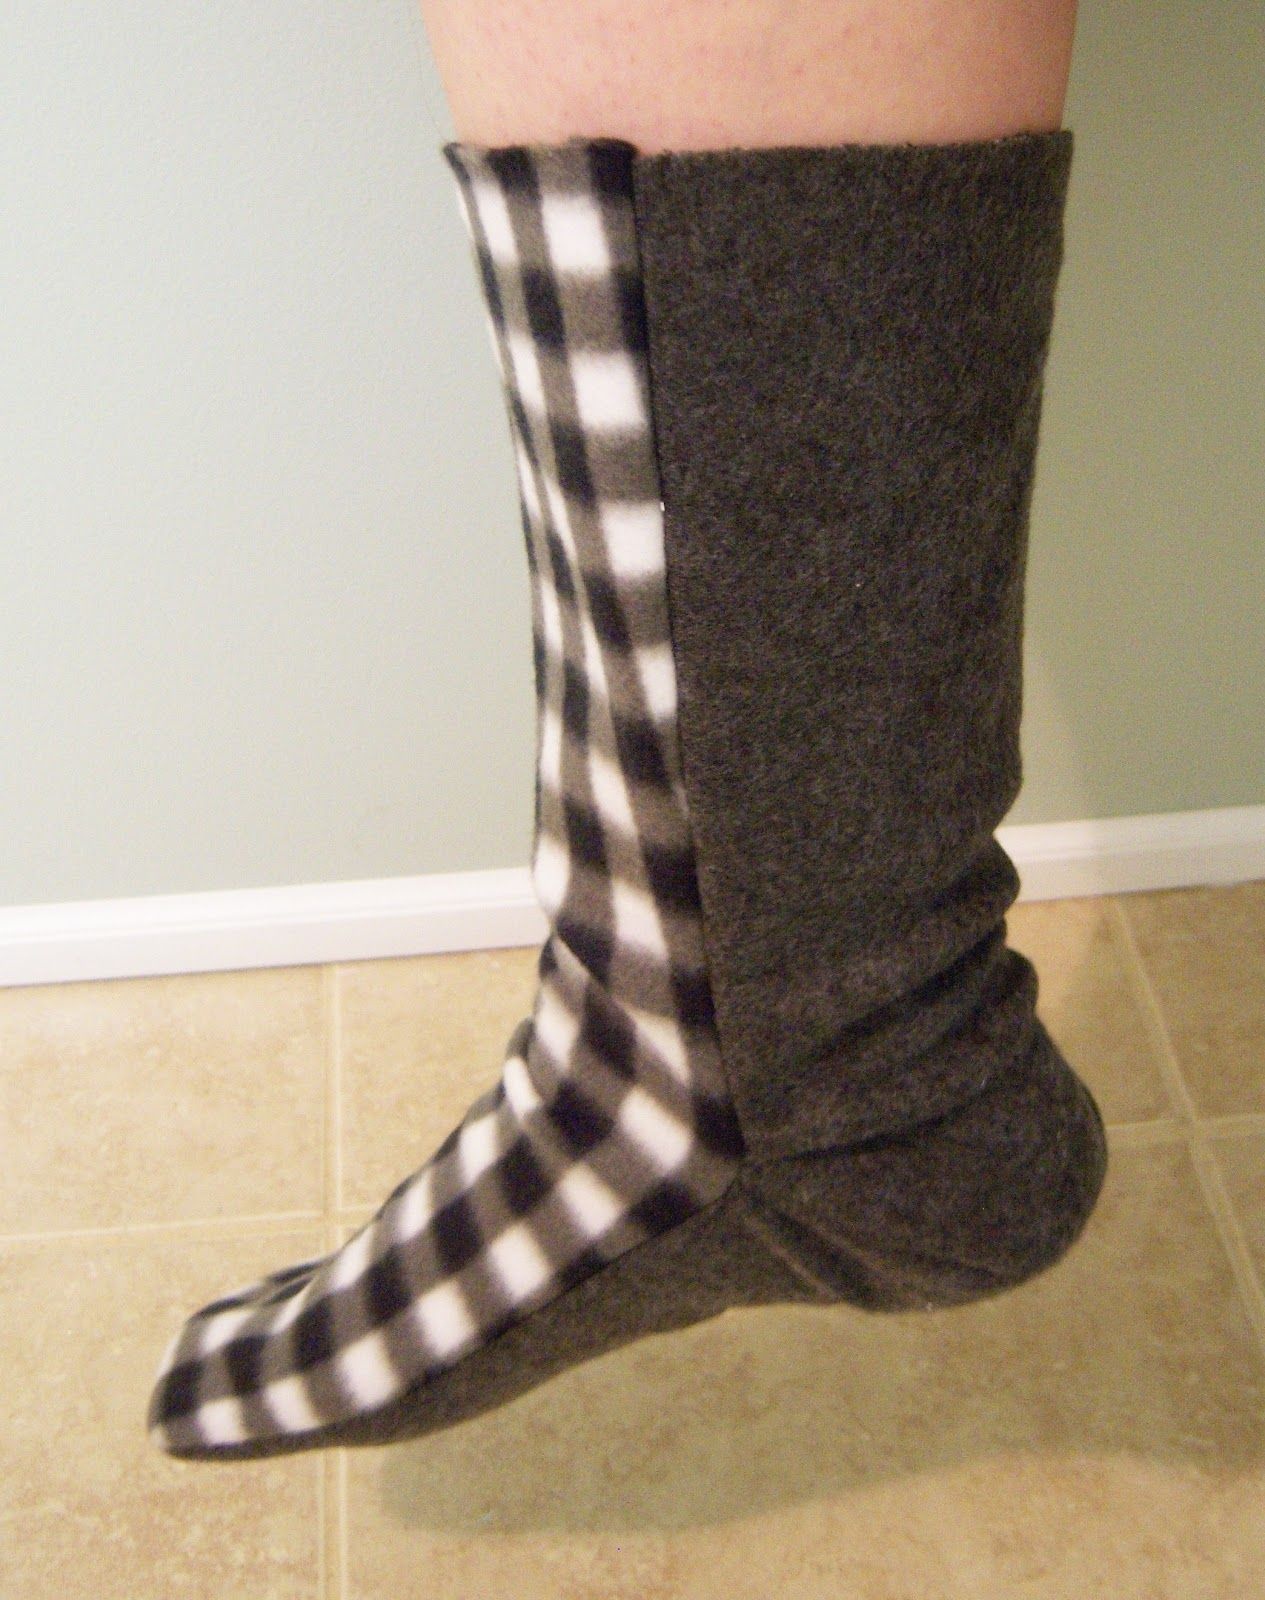 Free Fleece Sock Sewing Pattern | Fleece Sock Tutorial | Sewing - Free Printable Fleece Sock Pattern